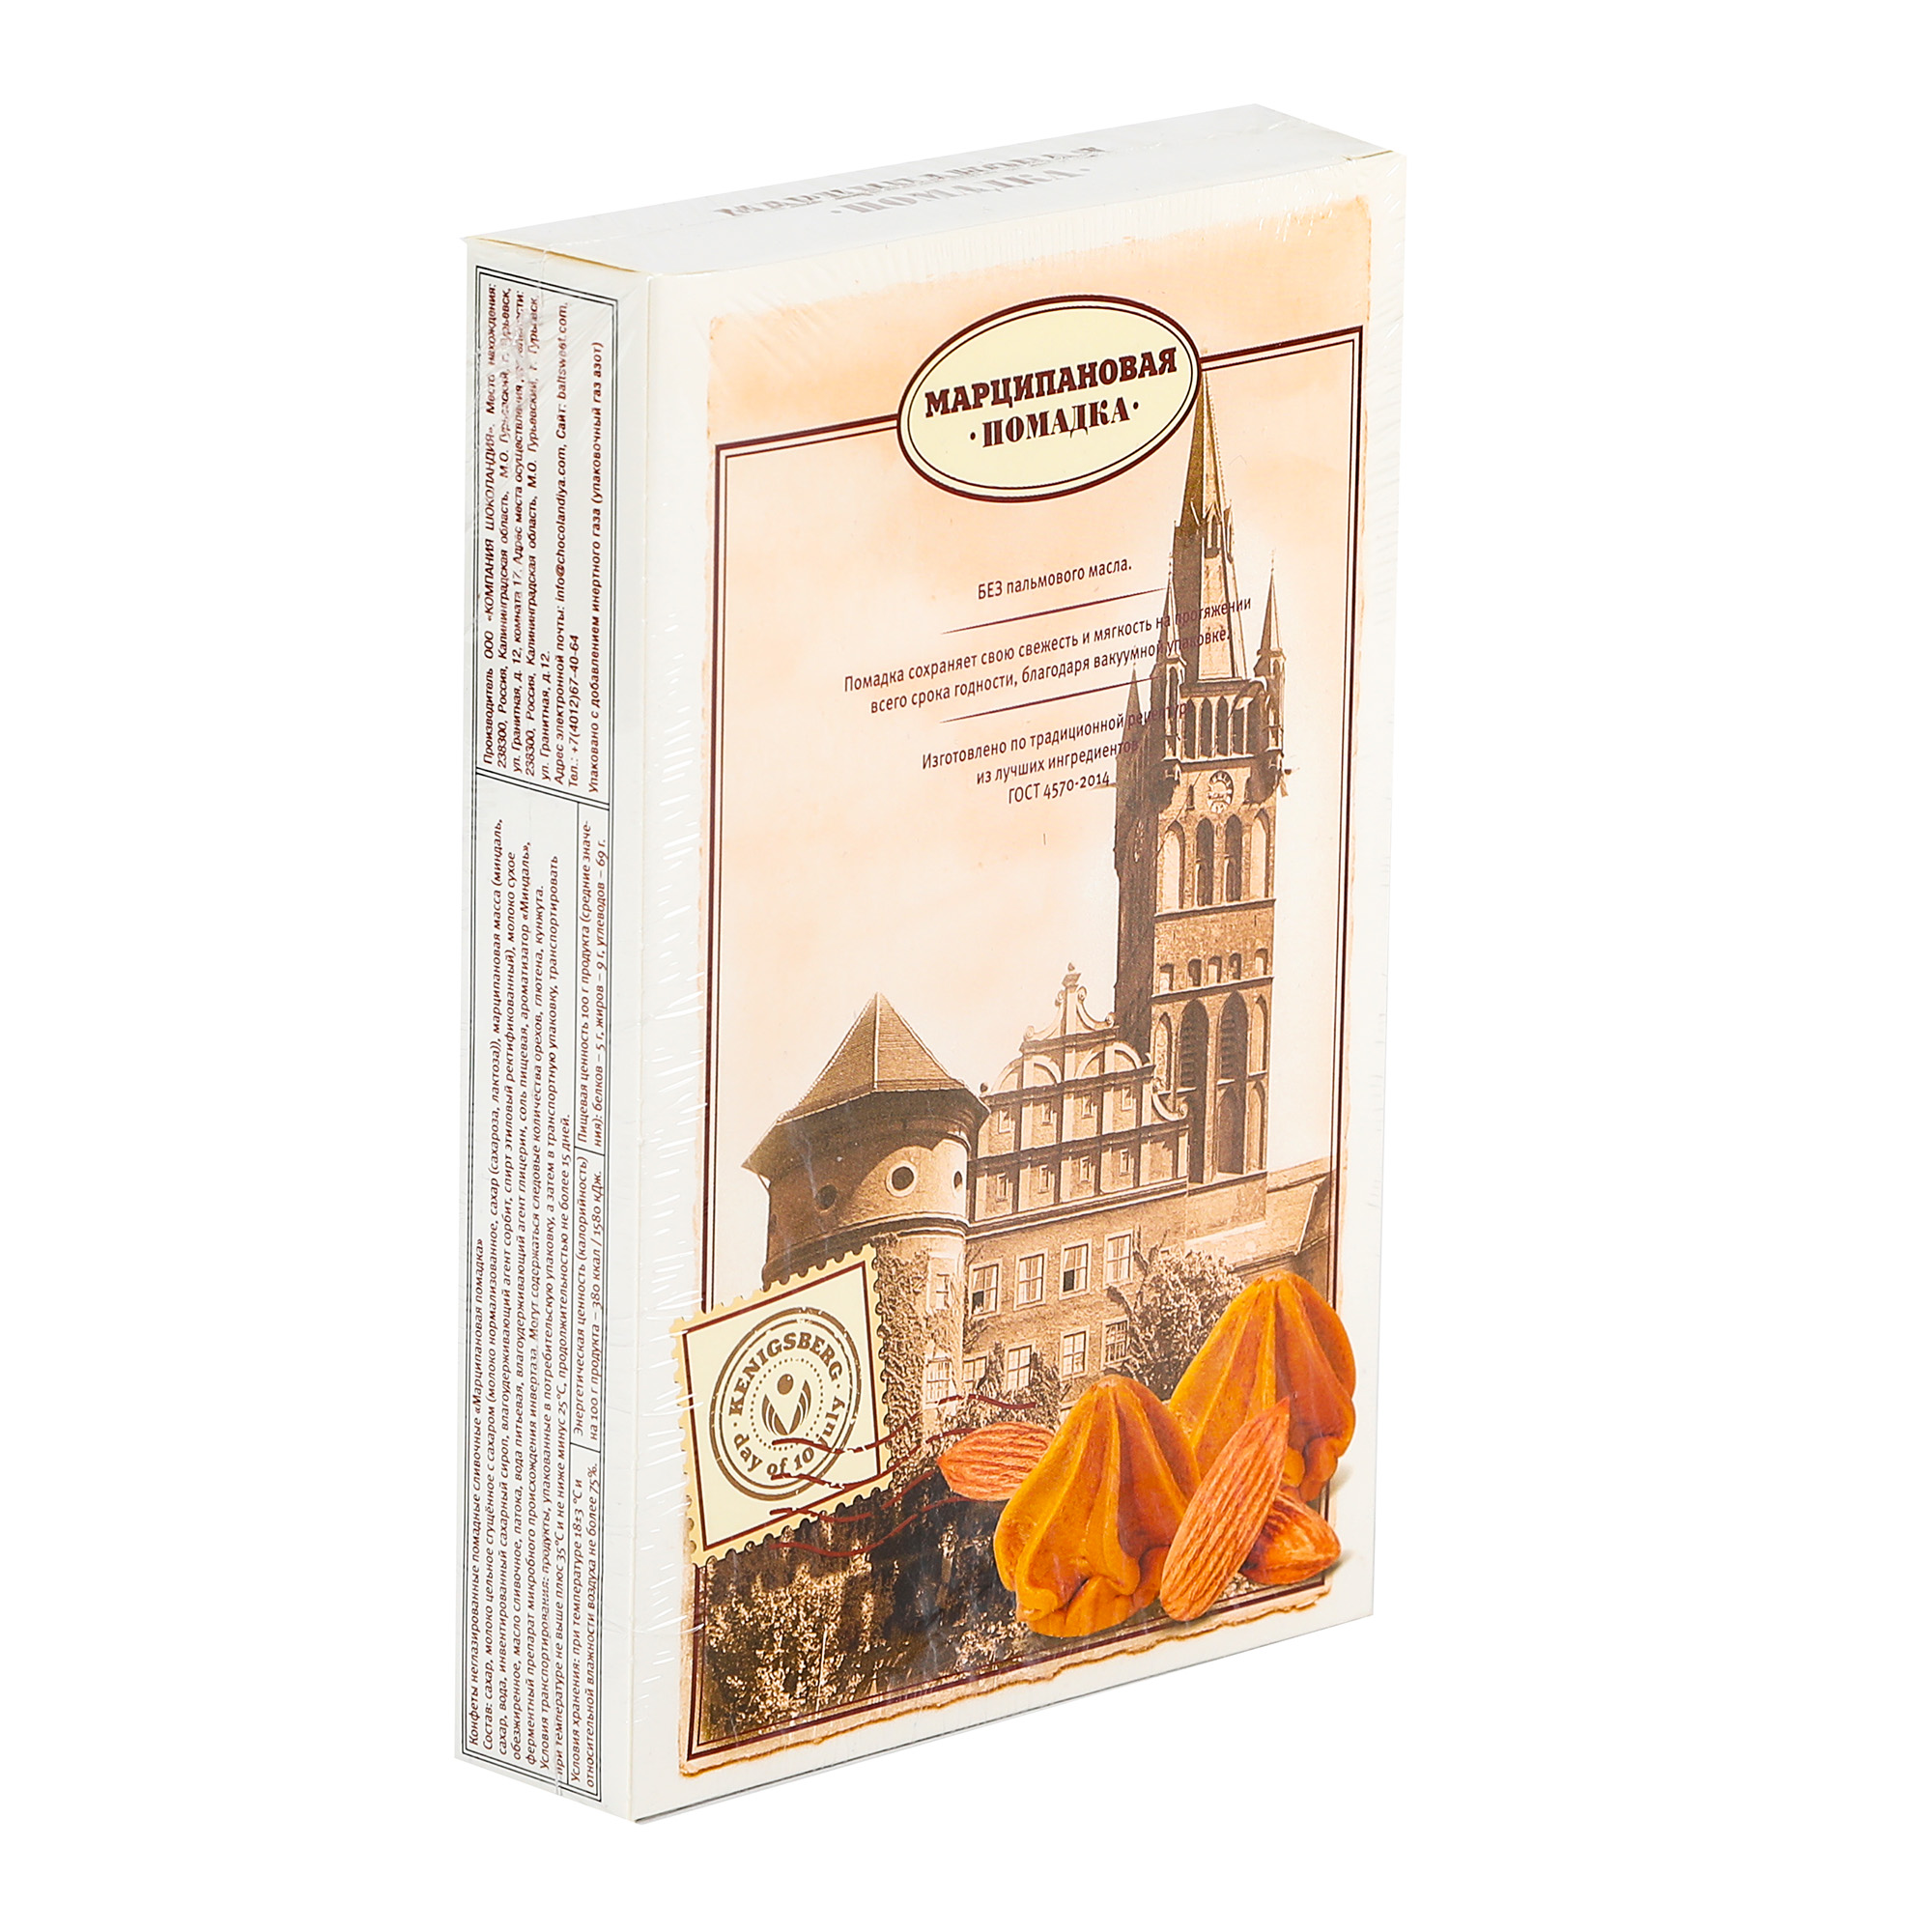 Конфеты Компания Шоколандия помадка Kenigsberg, 150 г коробка складная под 4 конфеты белая 12 6 х 12 6 х 3 5 см